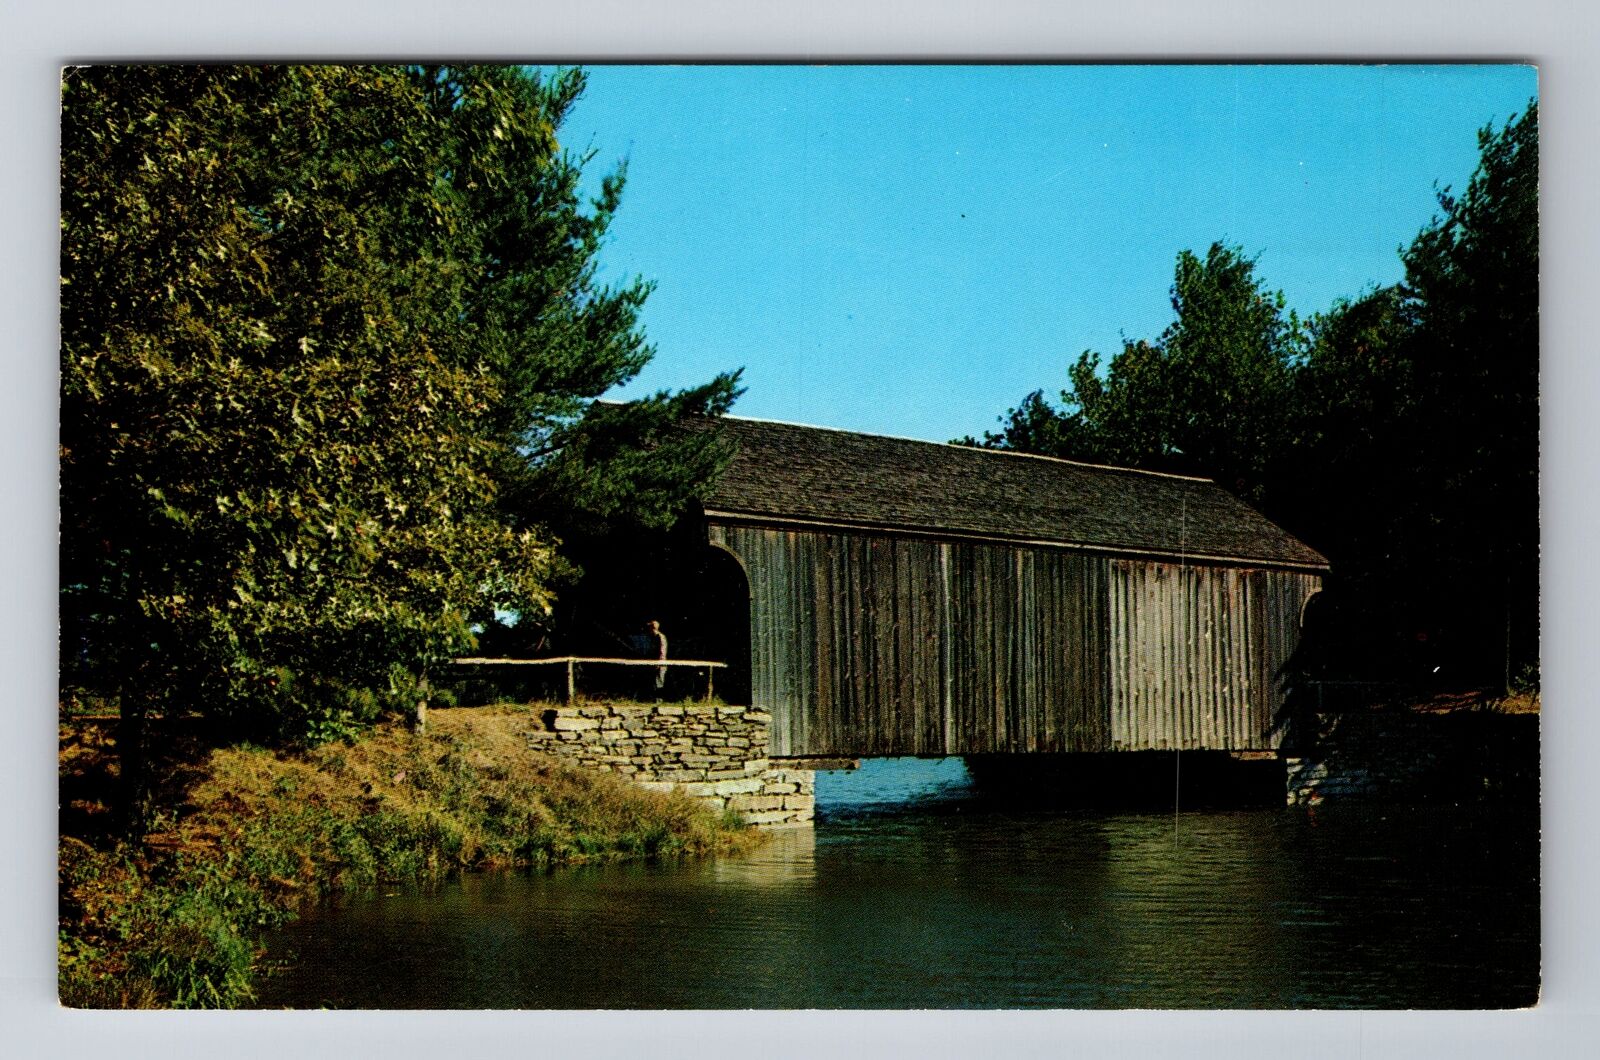 Dummerston VT-Vermont, Covered Bridge, Antique, Vintage Souvenir Postcard